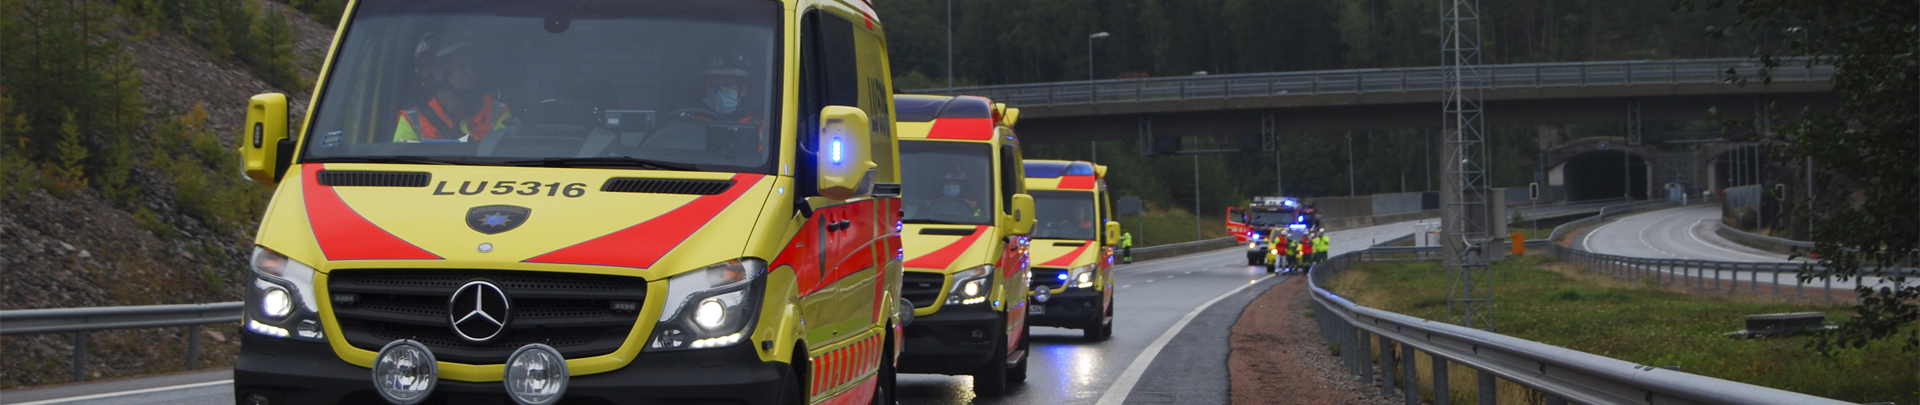 Ambulanser efter varandra på en väg.